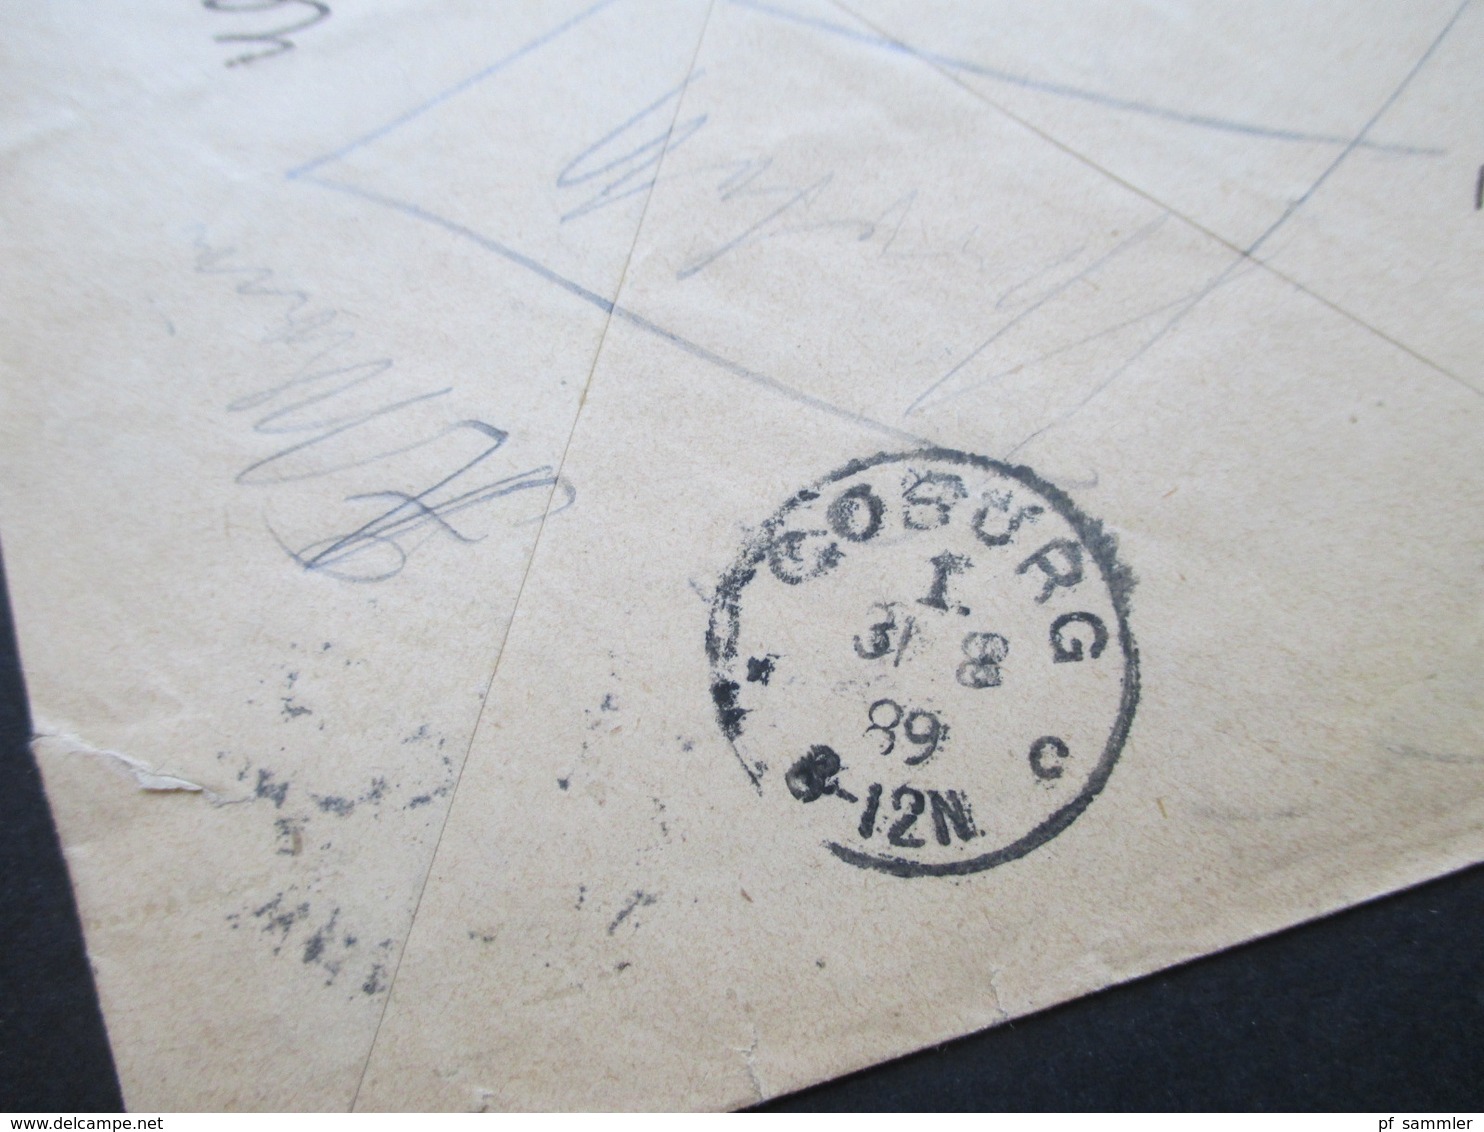 DR 1889 MiF Nr. 41 u. 42 R-Zettel Eingeschrieben Duisburg 1 Postauftrag an das Kaiserliche Postamt zu Coburg